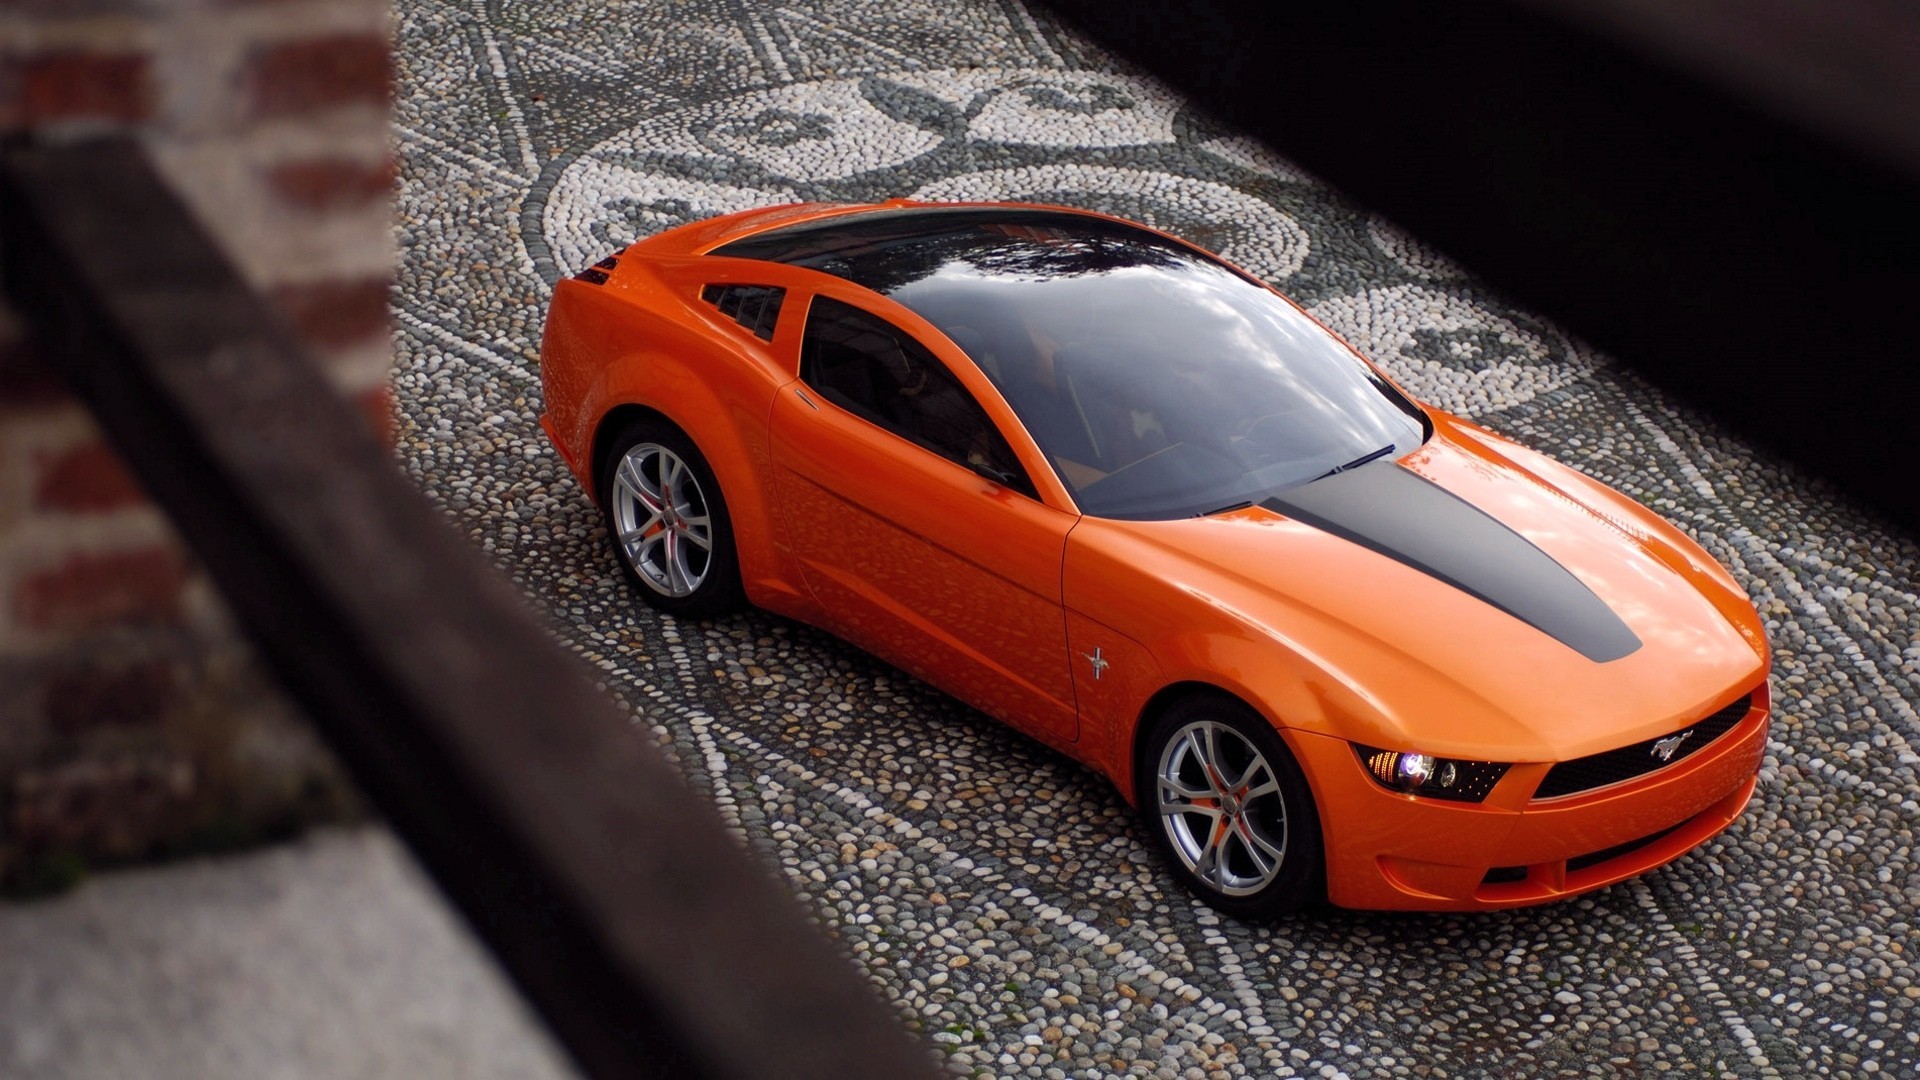 Ford Mustang, Car, Orange, Closeup Wallpaper